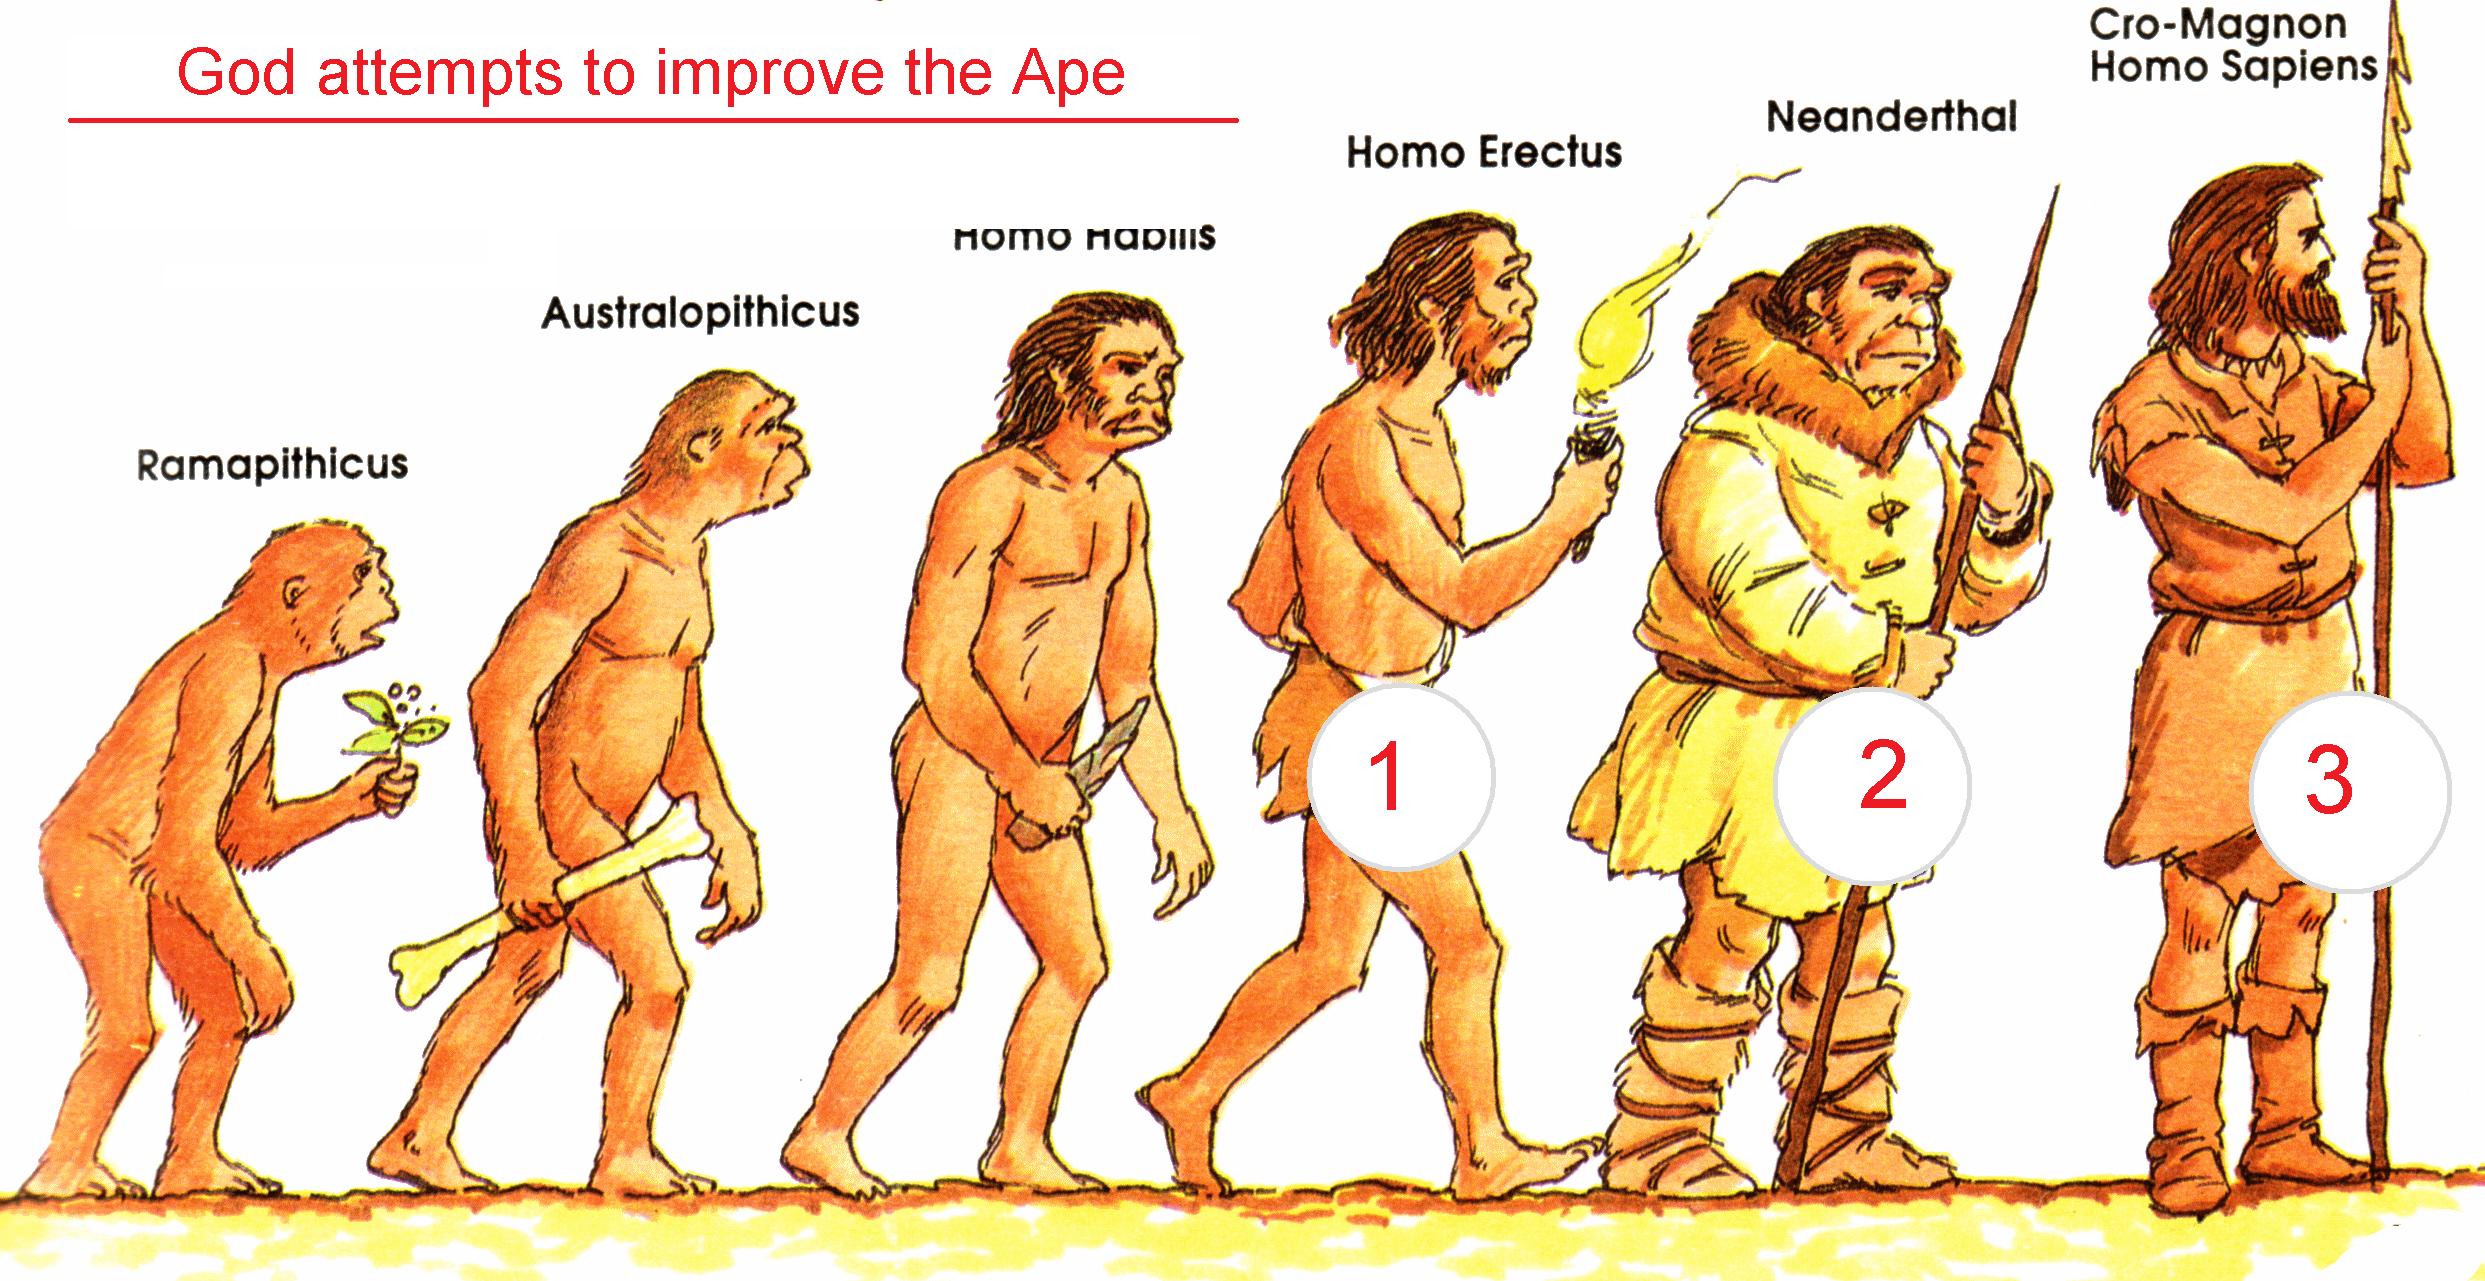 Человек латинское название. Эволюция человека хомо сапиенс. Человек разумный разумный homo sapiens sapiens. Эволюция человека неандерталец кроманьонец. Хомо сапиенс неандерталец кроманьонец.